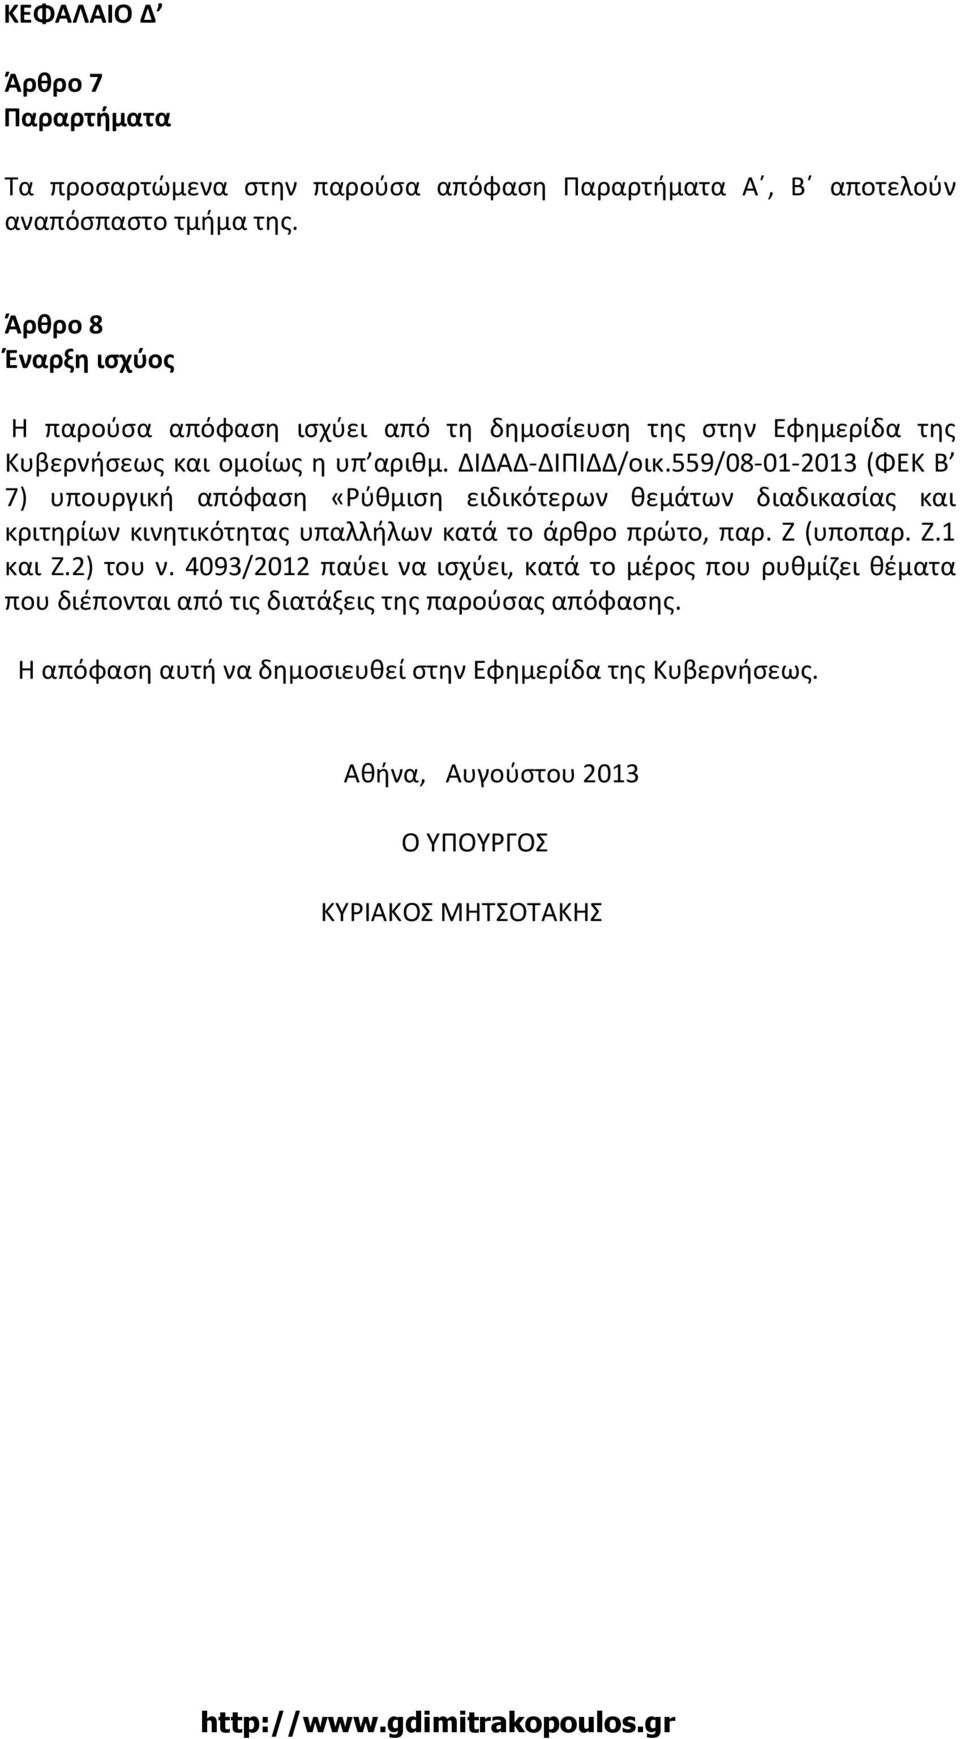 559/08-01-2013 (ΦΕΚ Β 7) υπουργική απόφαση «Ρύθμιση ειδικότερων θεμάτων διαδικασίας και κριτηρίων κινητικότητας υπαλλήλων κατά το άρθρο πρώτο, παρ. Ζ (υποπαρ. Ζ.1 και Ζ.